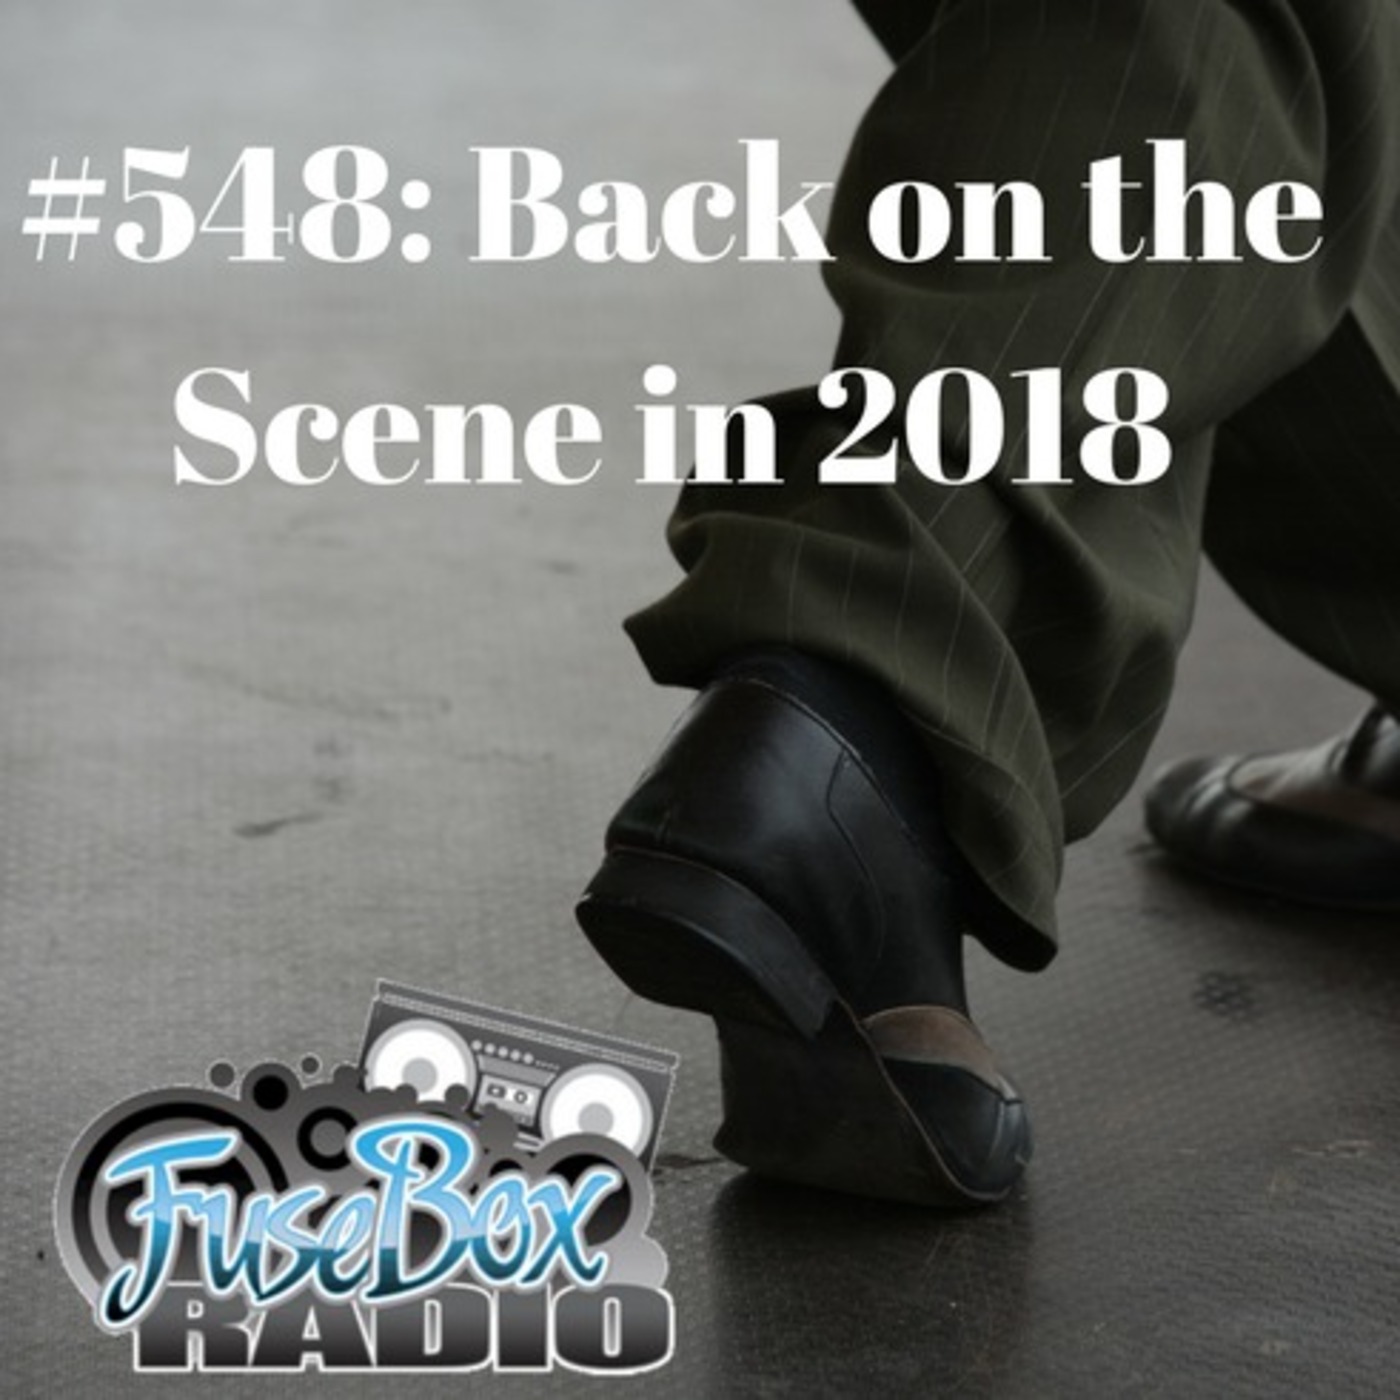 FuseBox Radio #548: Back on the Scene in 2018... [Week of Jan. 24, 2018]